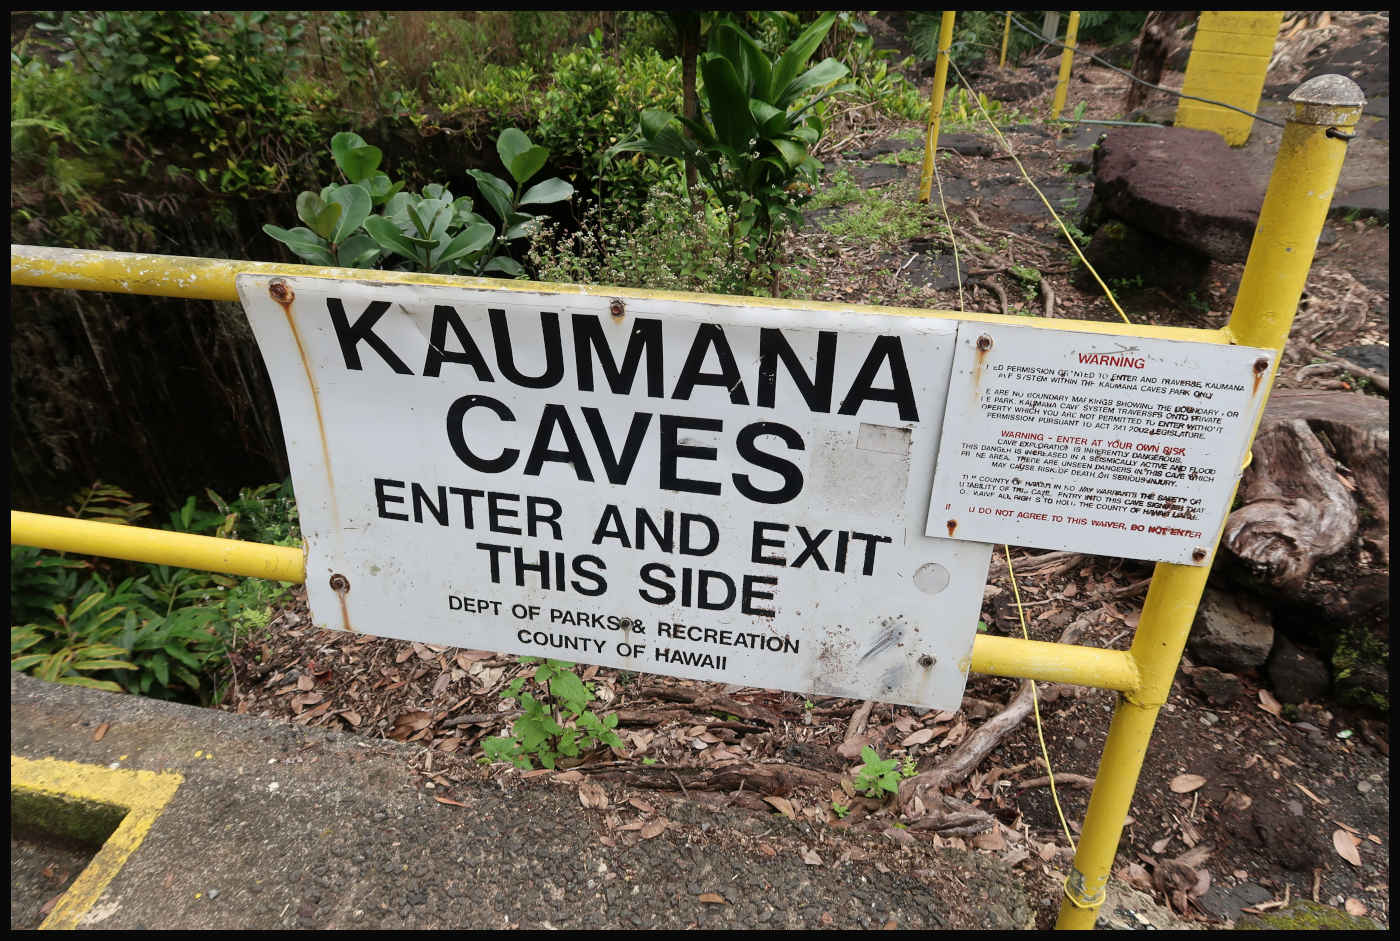 Entrada y salida. - Kaumana Caves